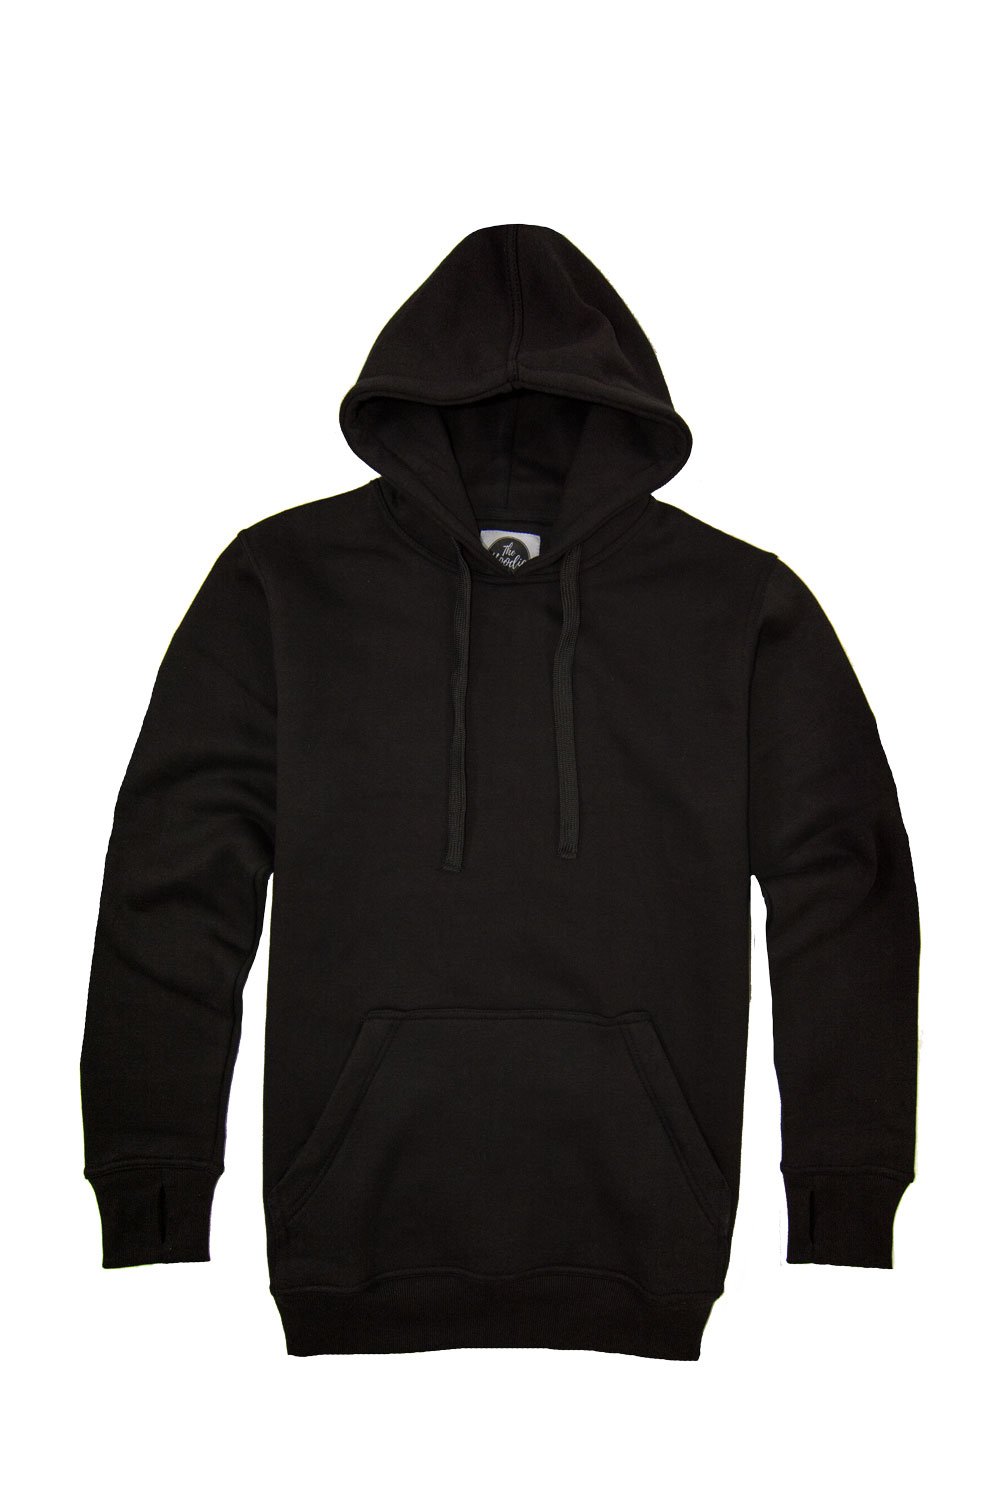 Tall black hoodie